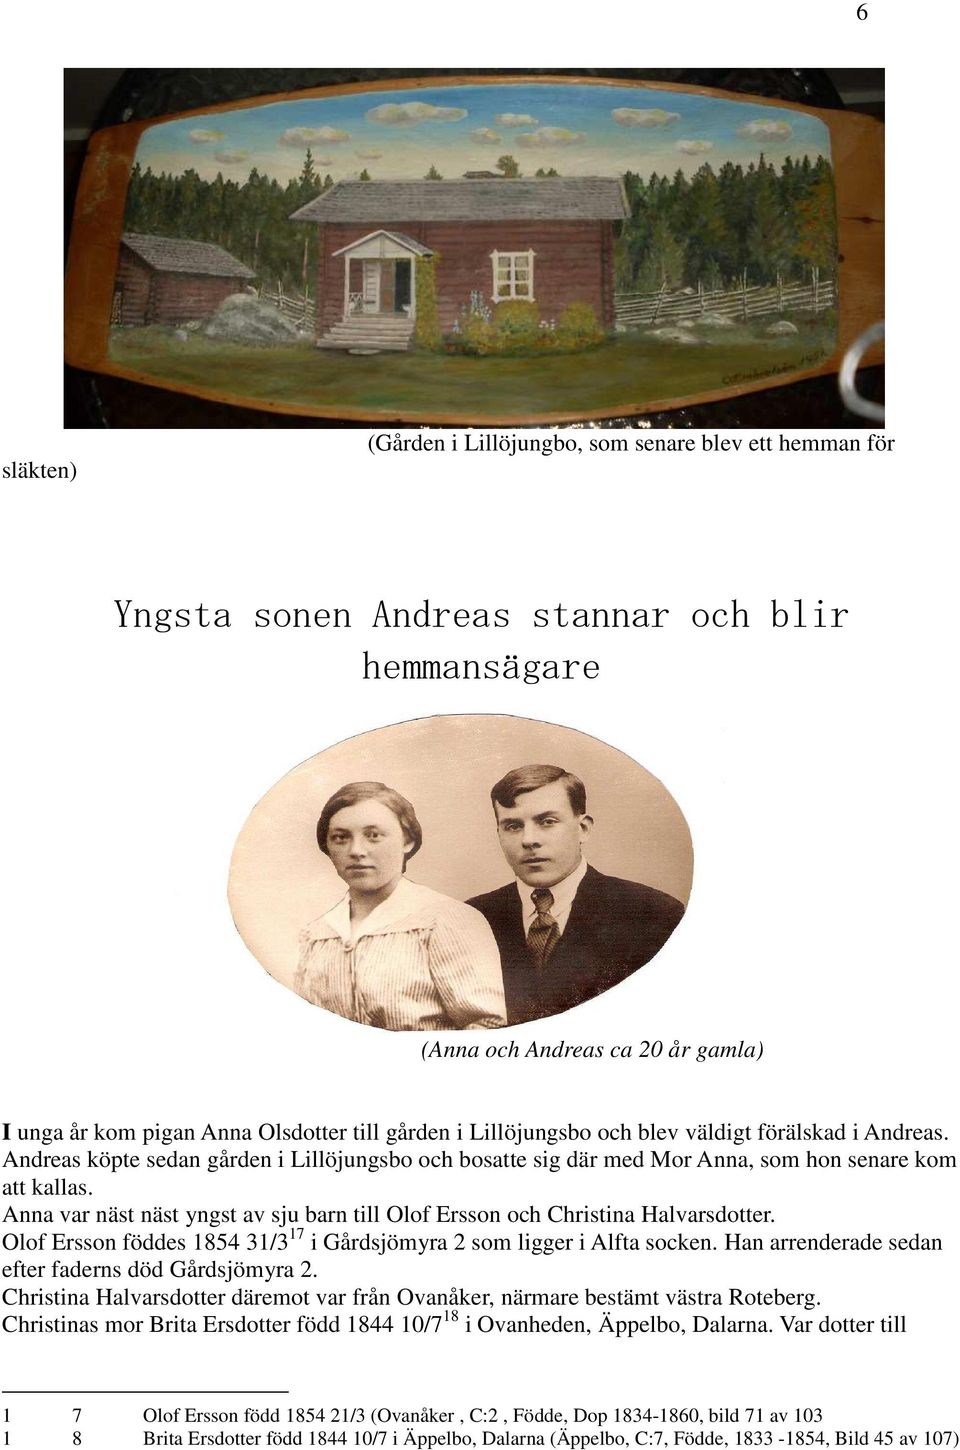 Anna var näst näst yngst av sju barn till Olof Ersson och Christina Halvarsdotter. Olof Ersson föddes 1854 31/3 17 i Gårdsjömyra 2 som ligger i Alfta socken.